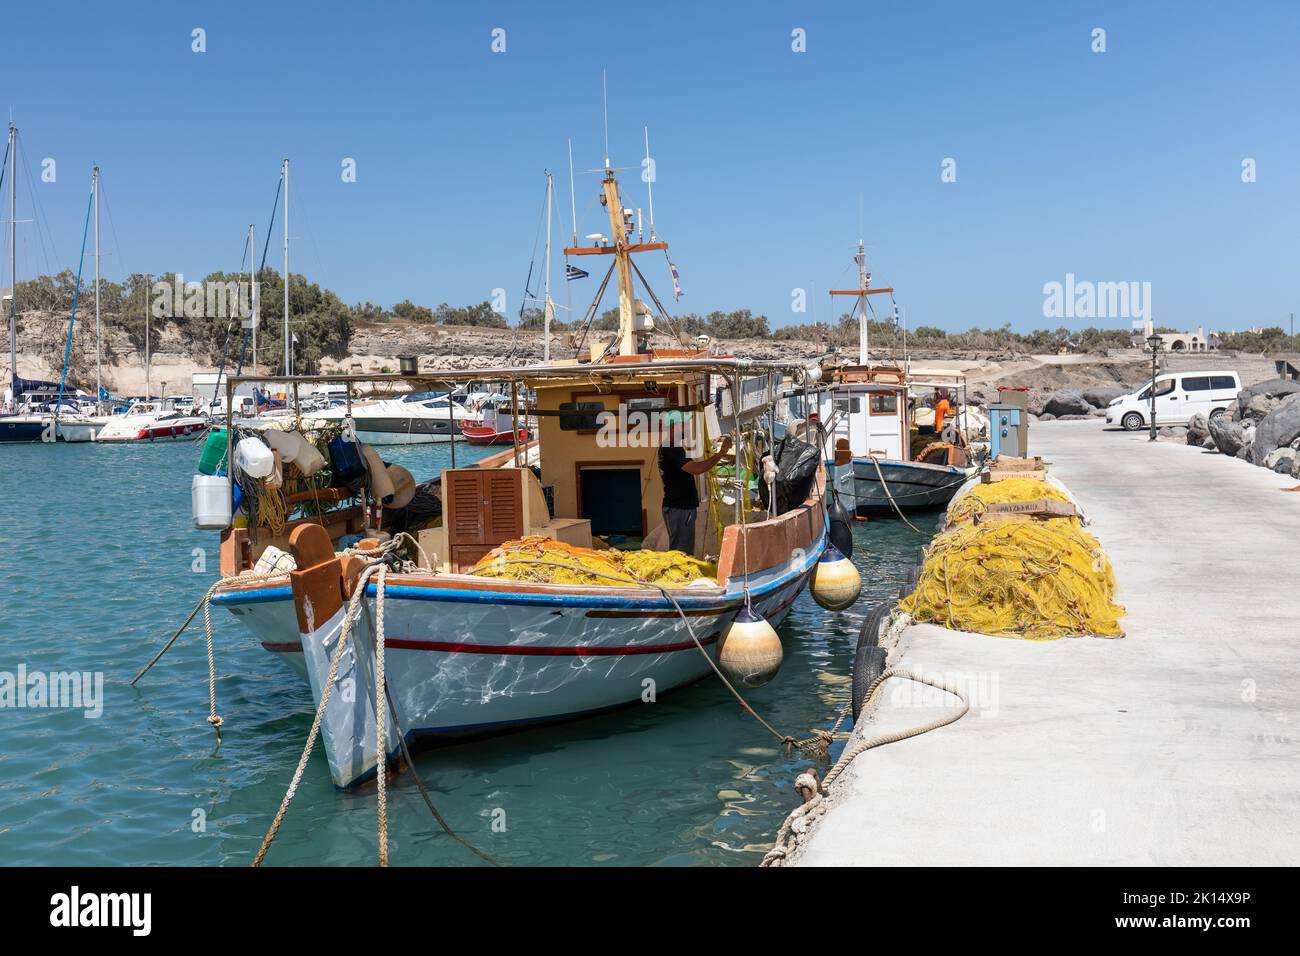 Cerca de un barco de pesca tradicional griego en Vlichada marina / puerto, Santorini, islas Cícladas, Grecia, Europa Foto de stock